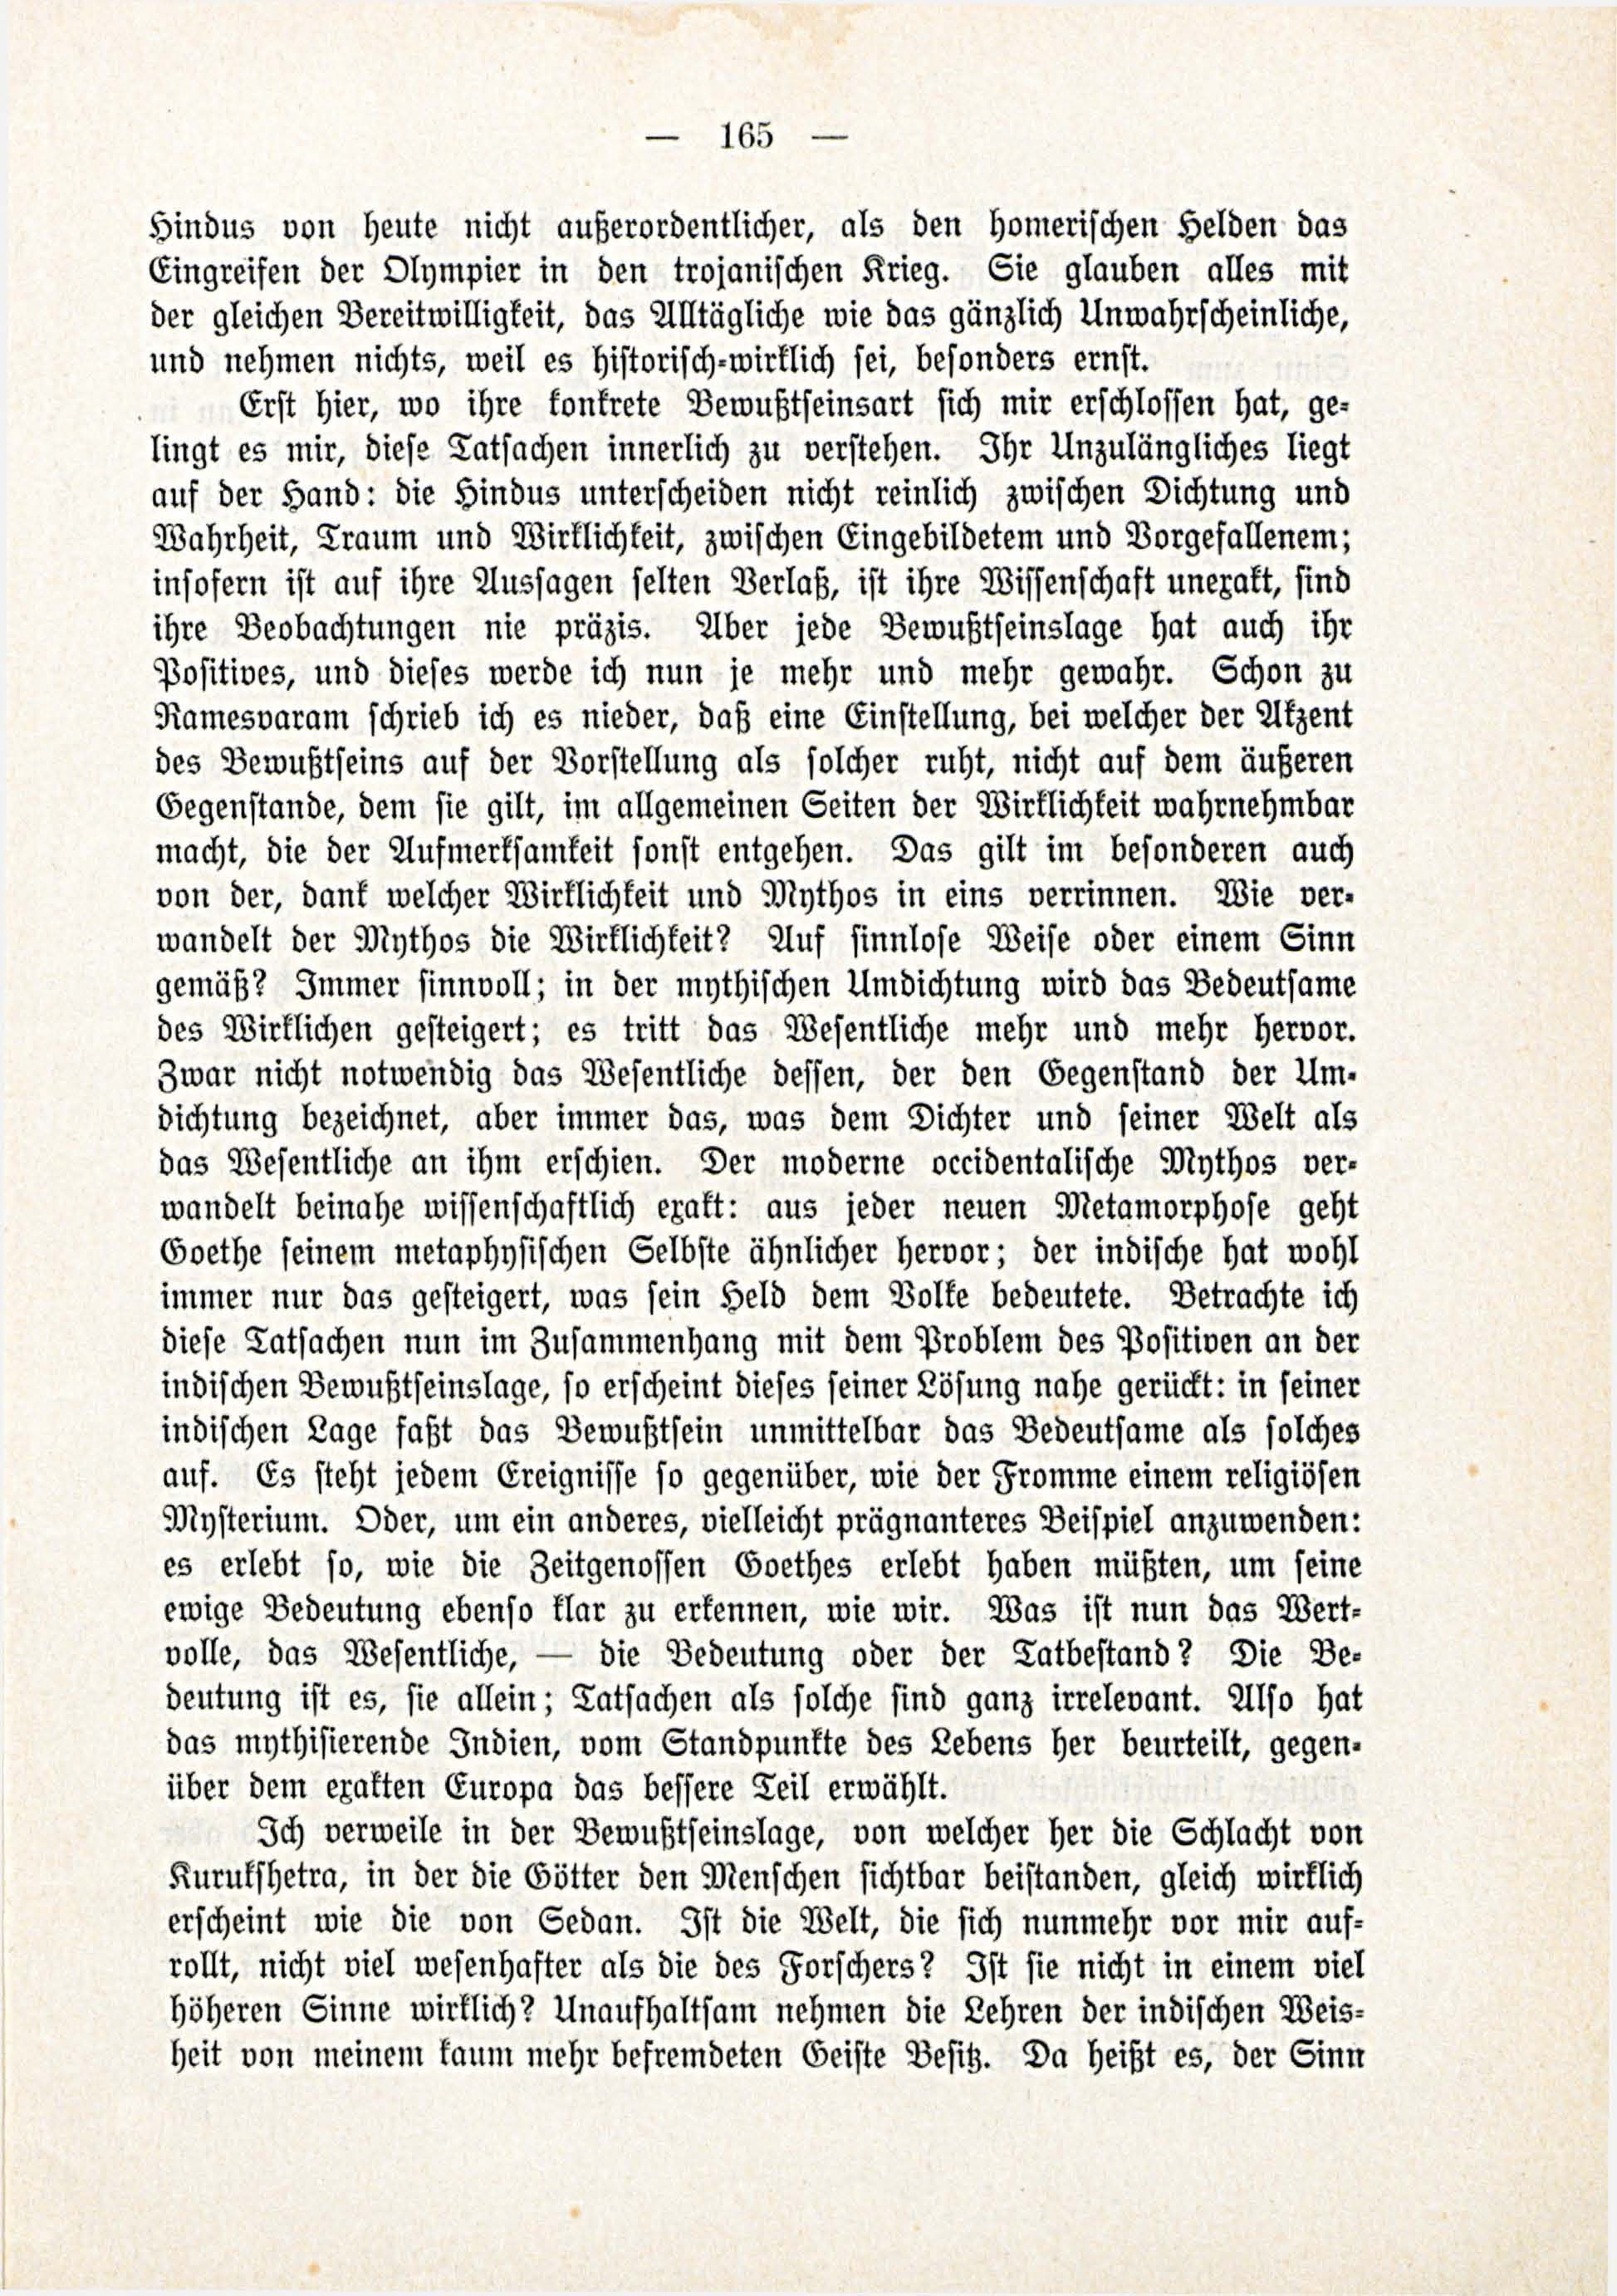 Deutsche Monatsschrift für Russland [3/03] (1914) | 11. (165) Основной текст